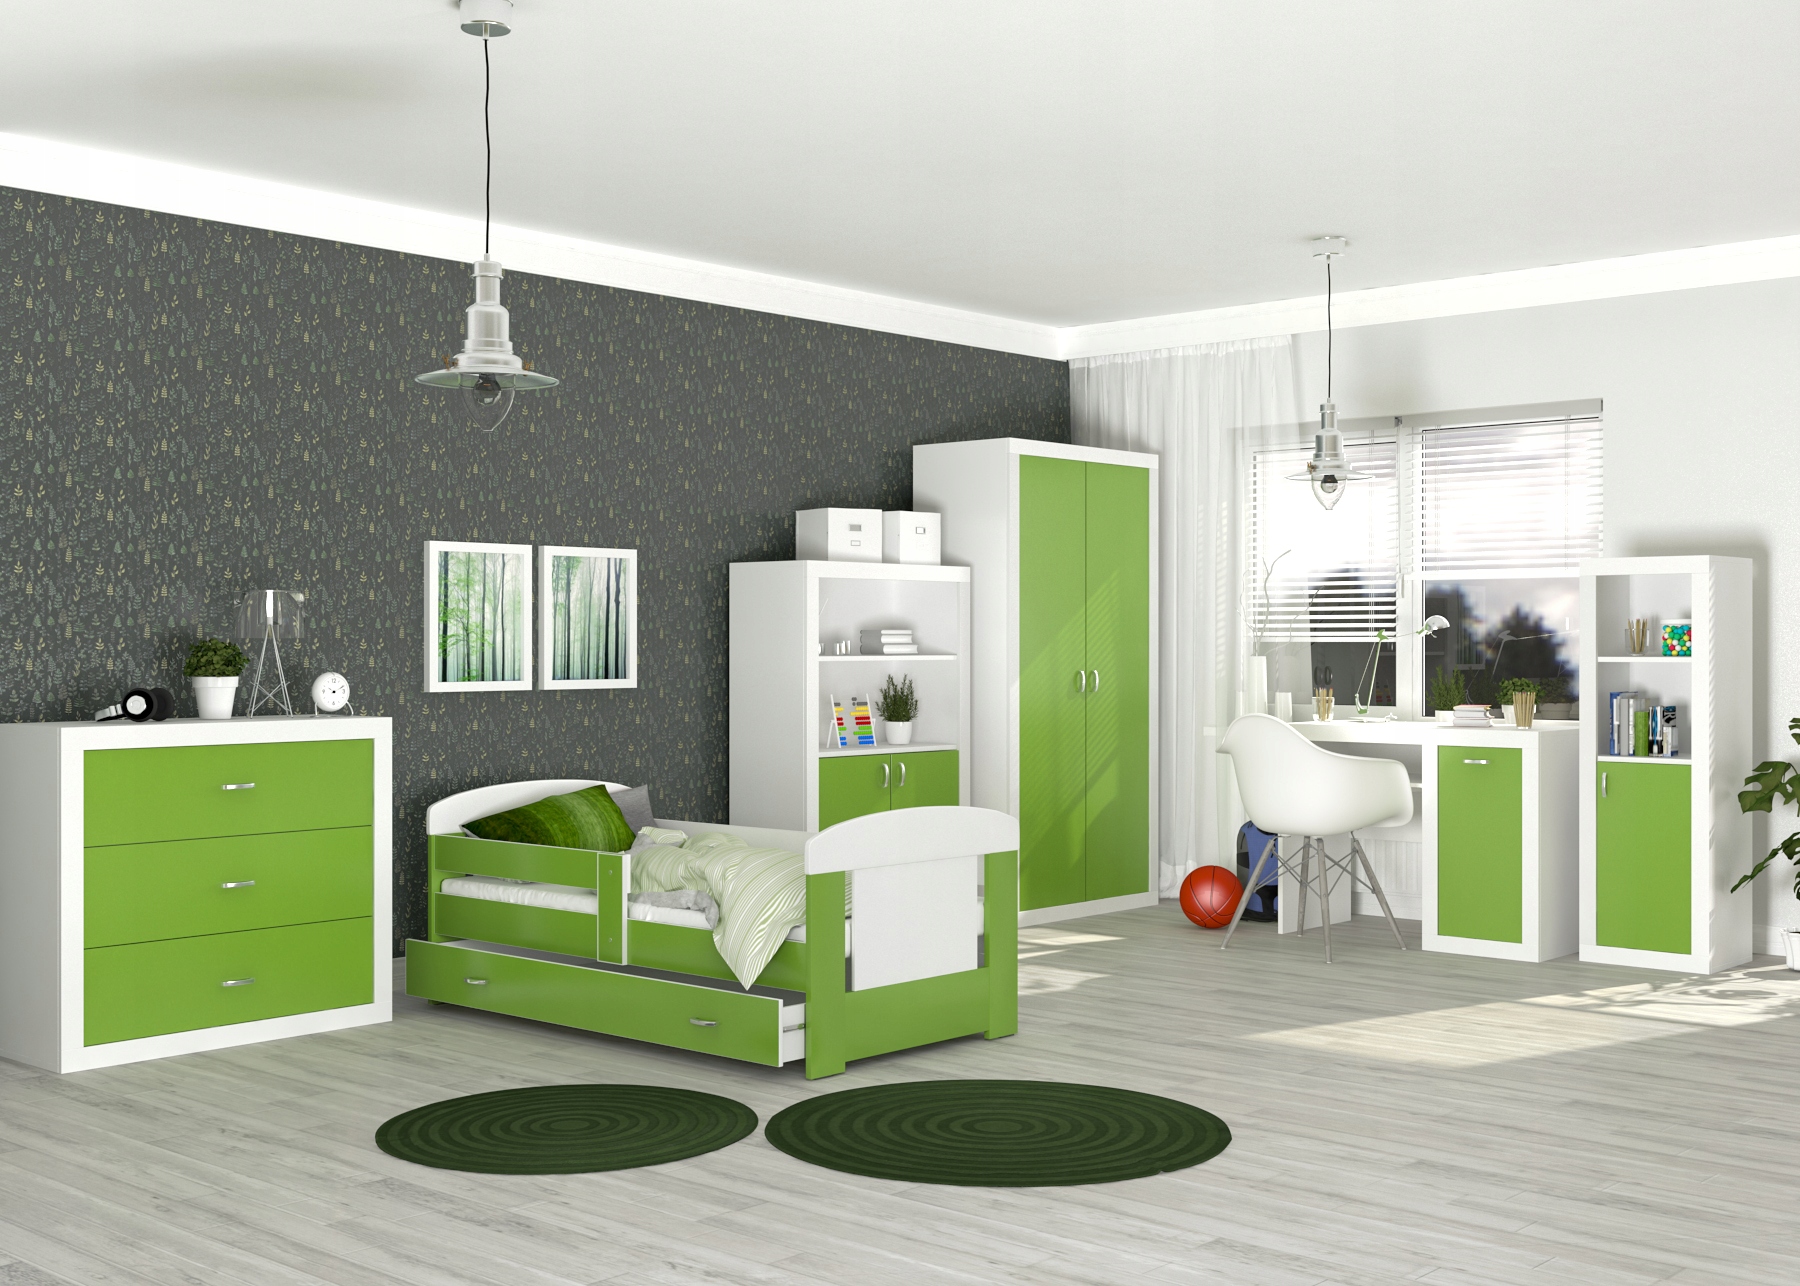 Детская мебель серая. Детская в бело зеленых тонах. Салатовая детская комната. Детская мебель зеленая. Зеленая мебель в детской.